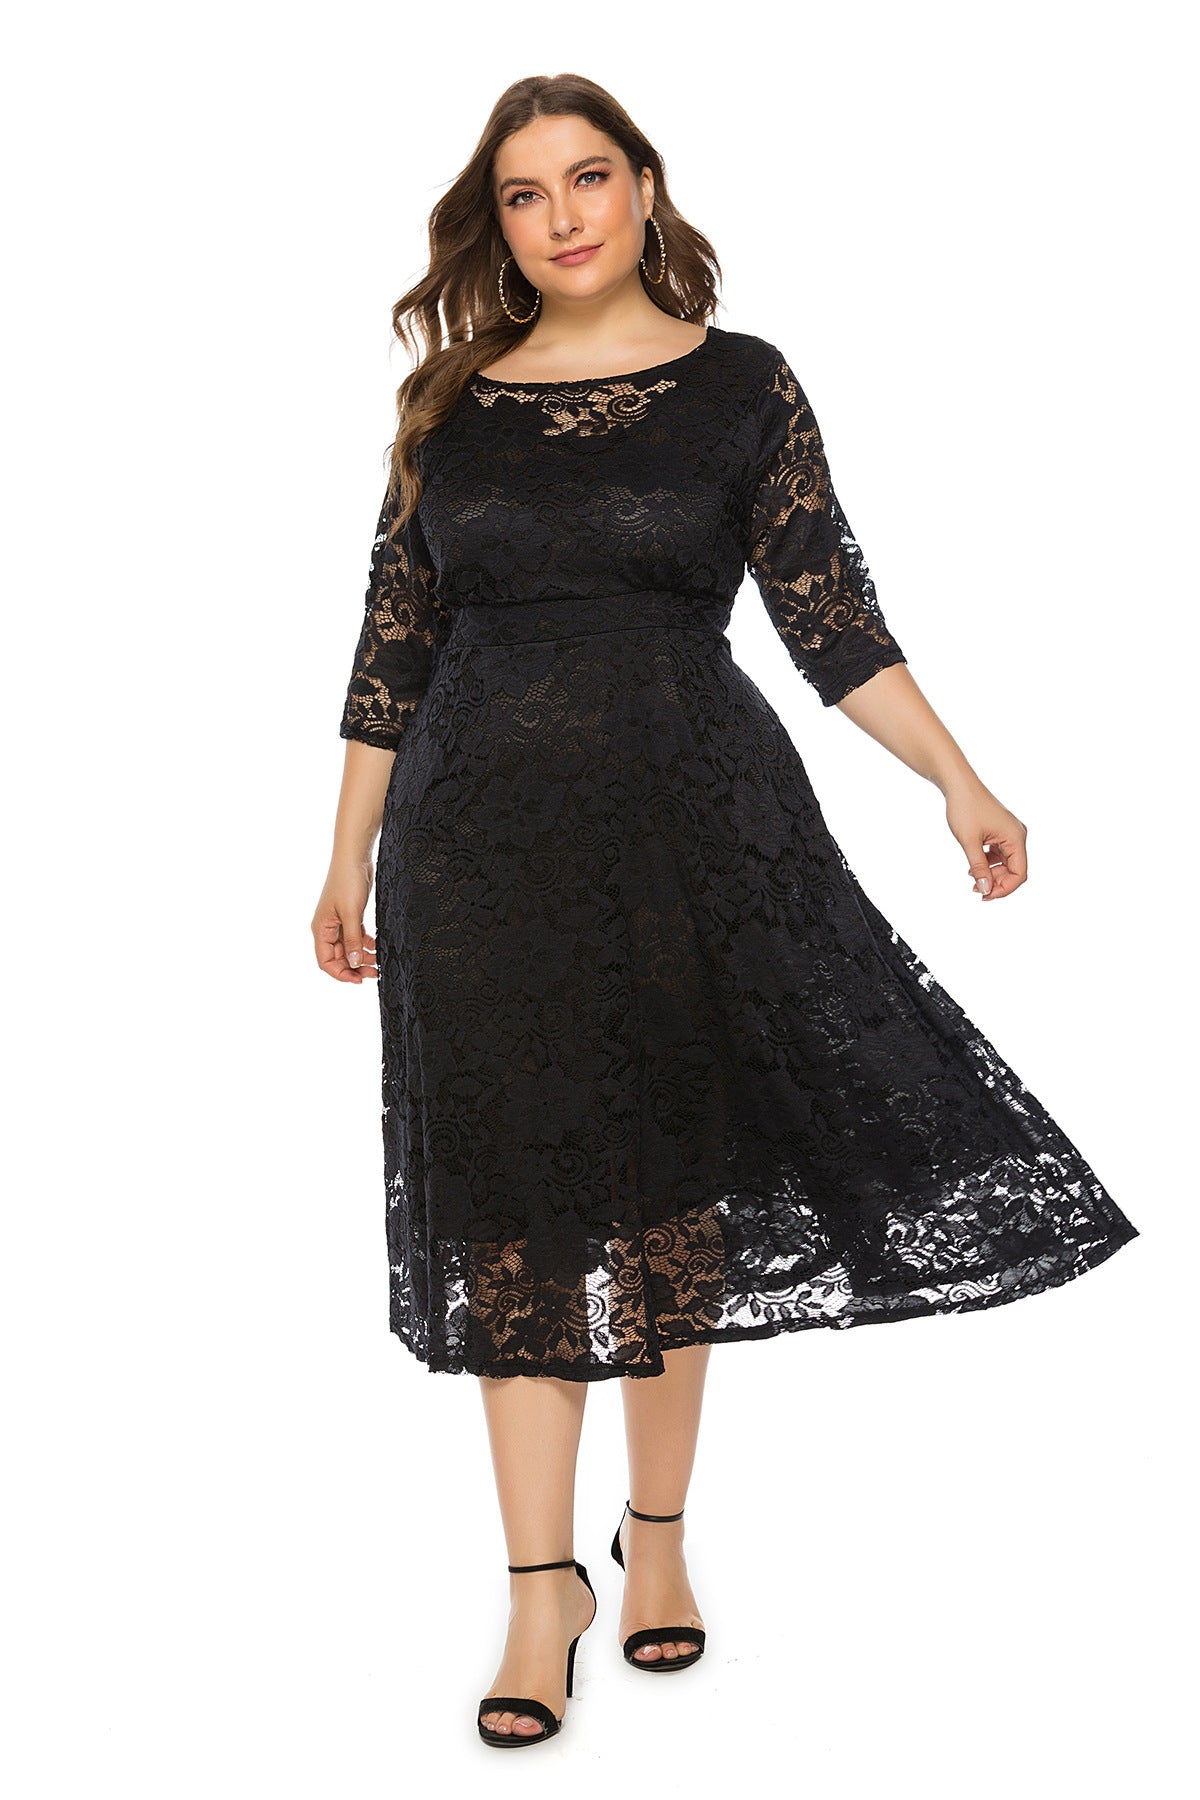 Plus Size Midi Skirt Dress  dresses Thecurvestory